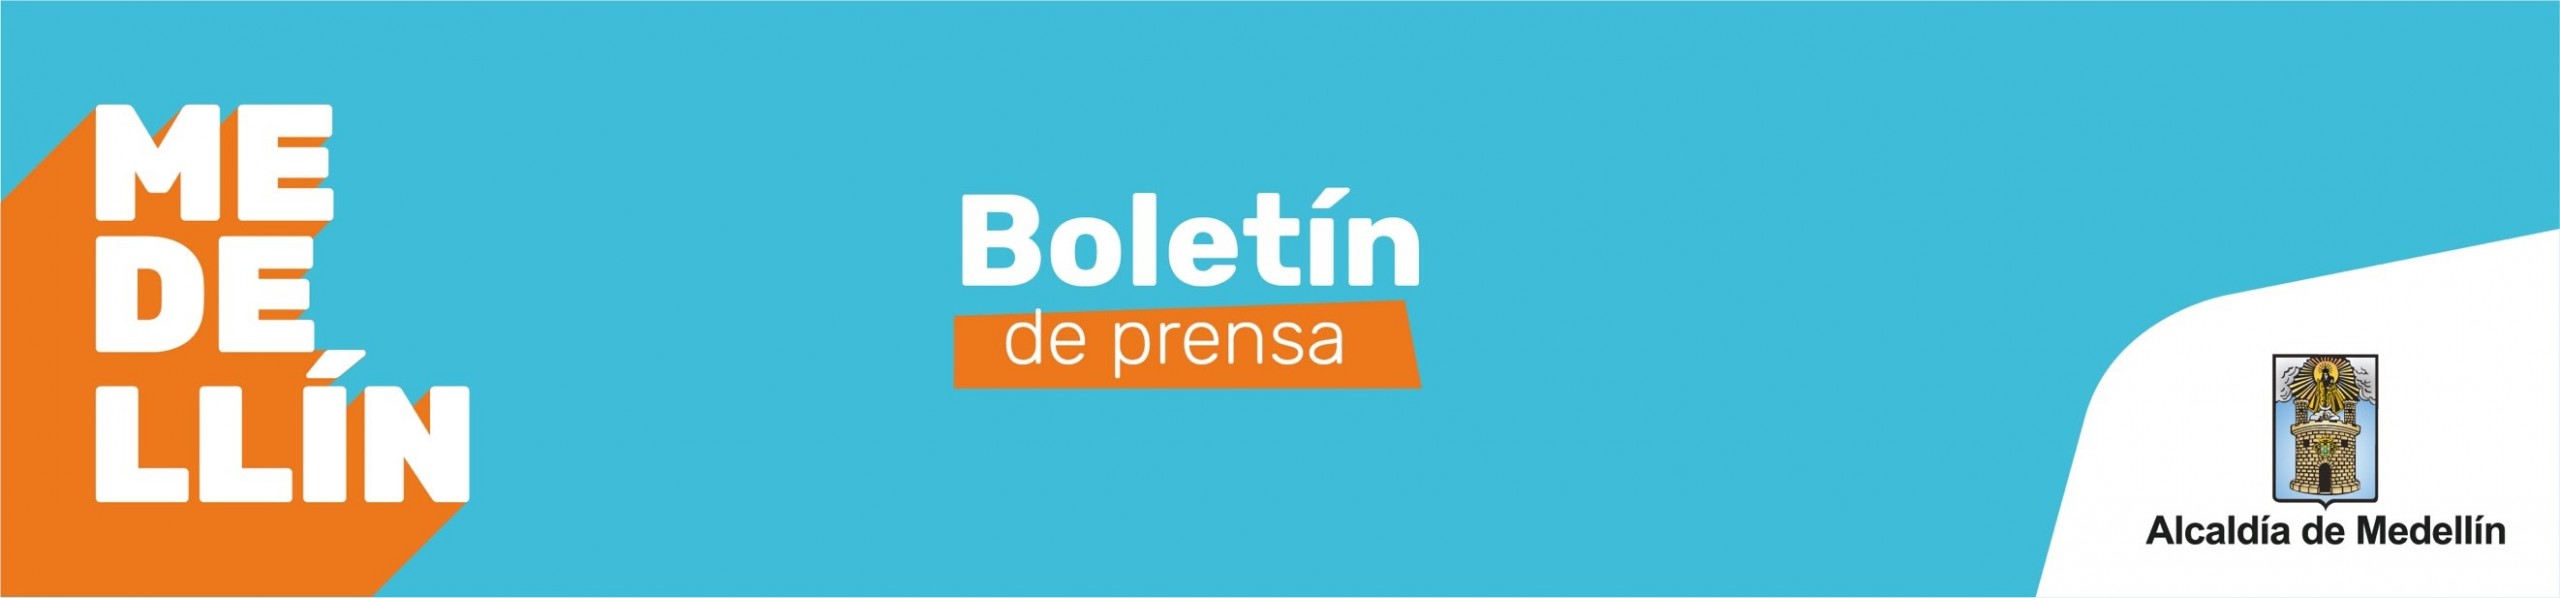 Medellín, boletín de prensa, REDTTU, Institución universitaria Pascual Bravo